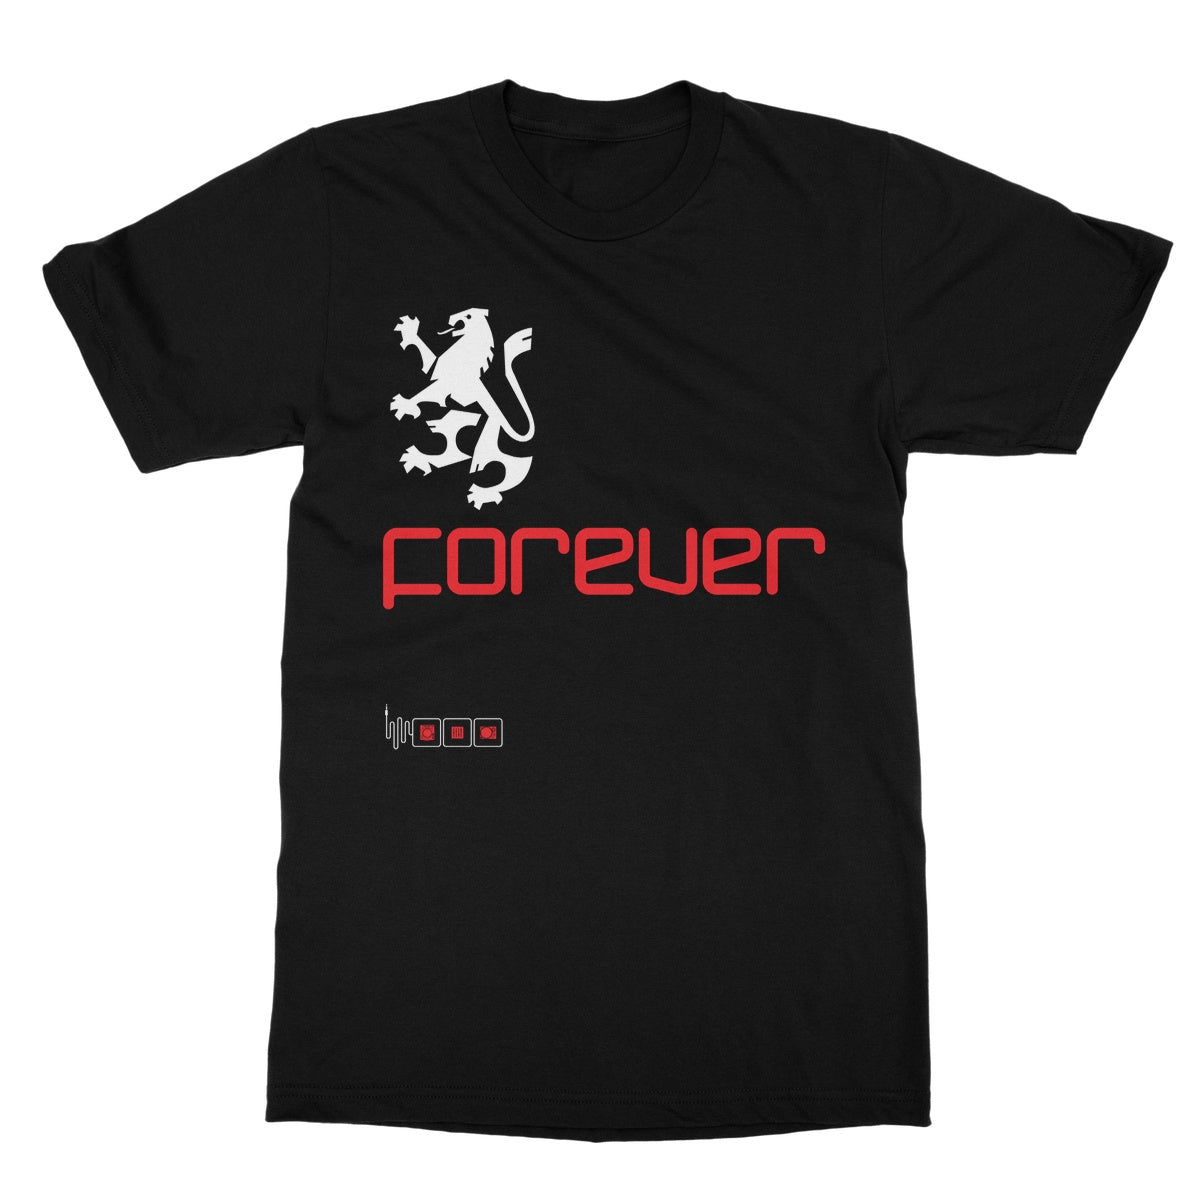 Gatecrasher Forever T-Shirt